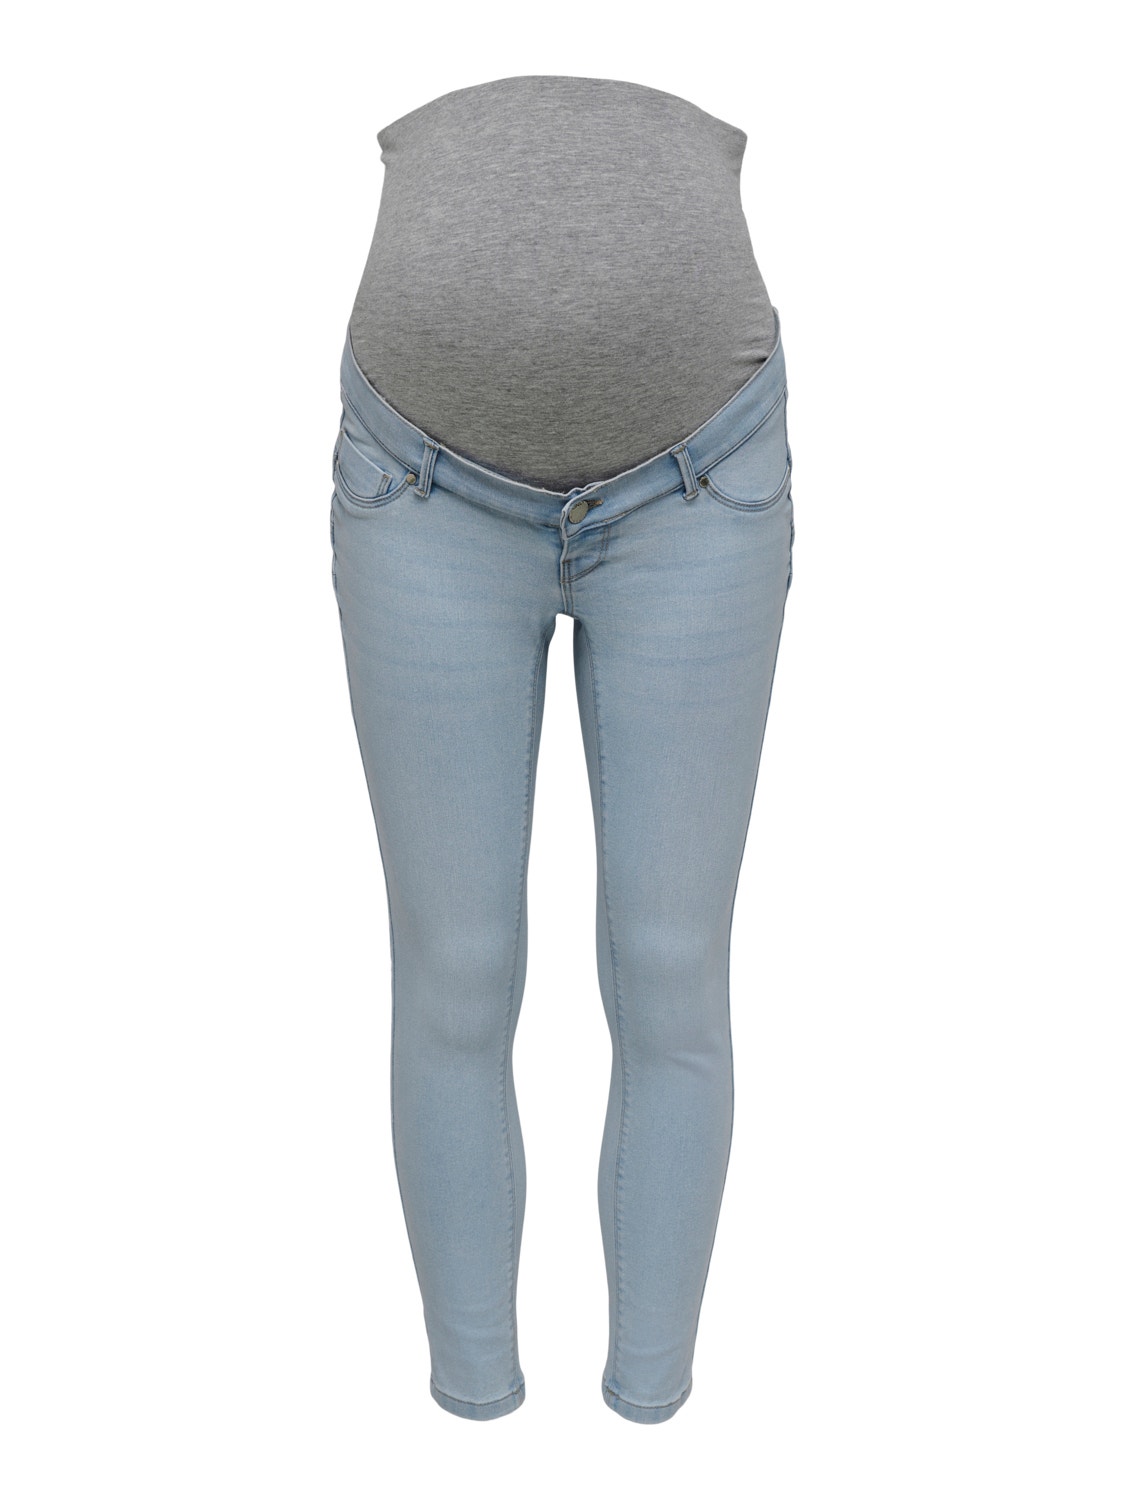 ONLY Skinny Fit Jeans -Light Blue Denim - 15259597